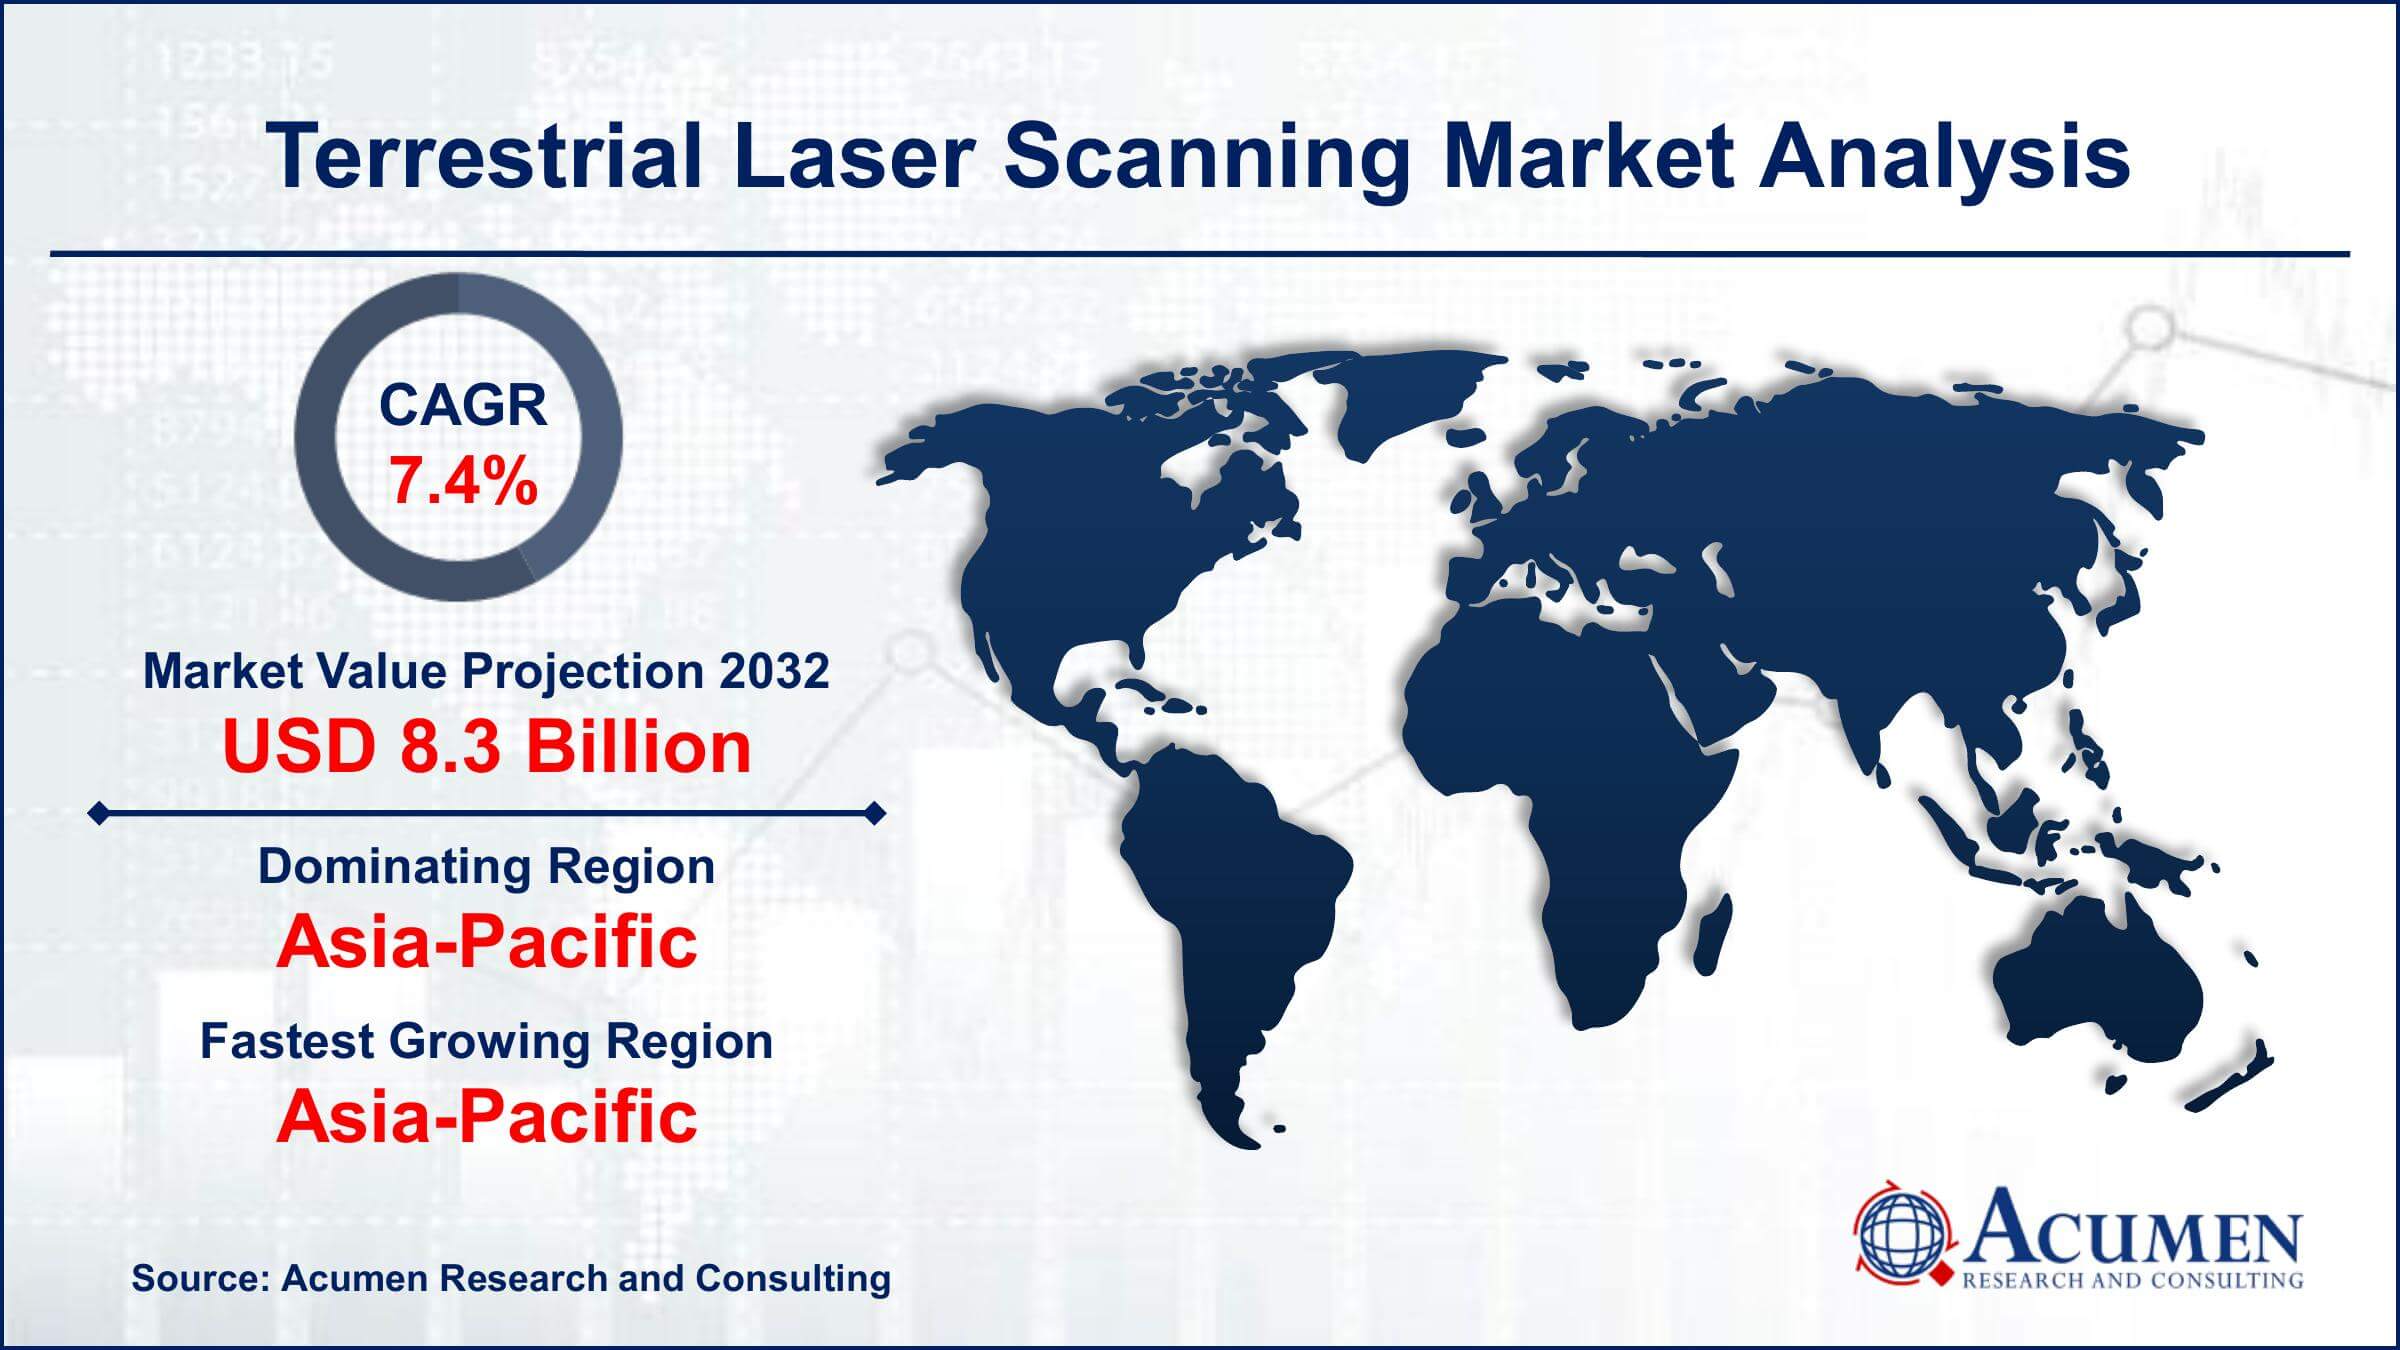 Global Terrestrial Laser Scanning Market Trends